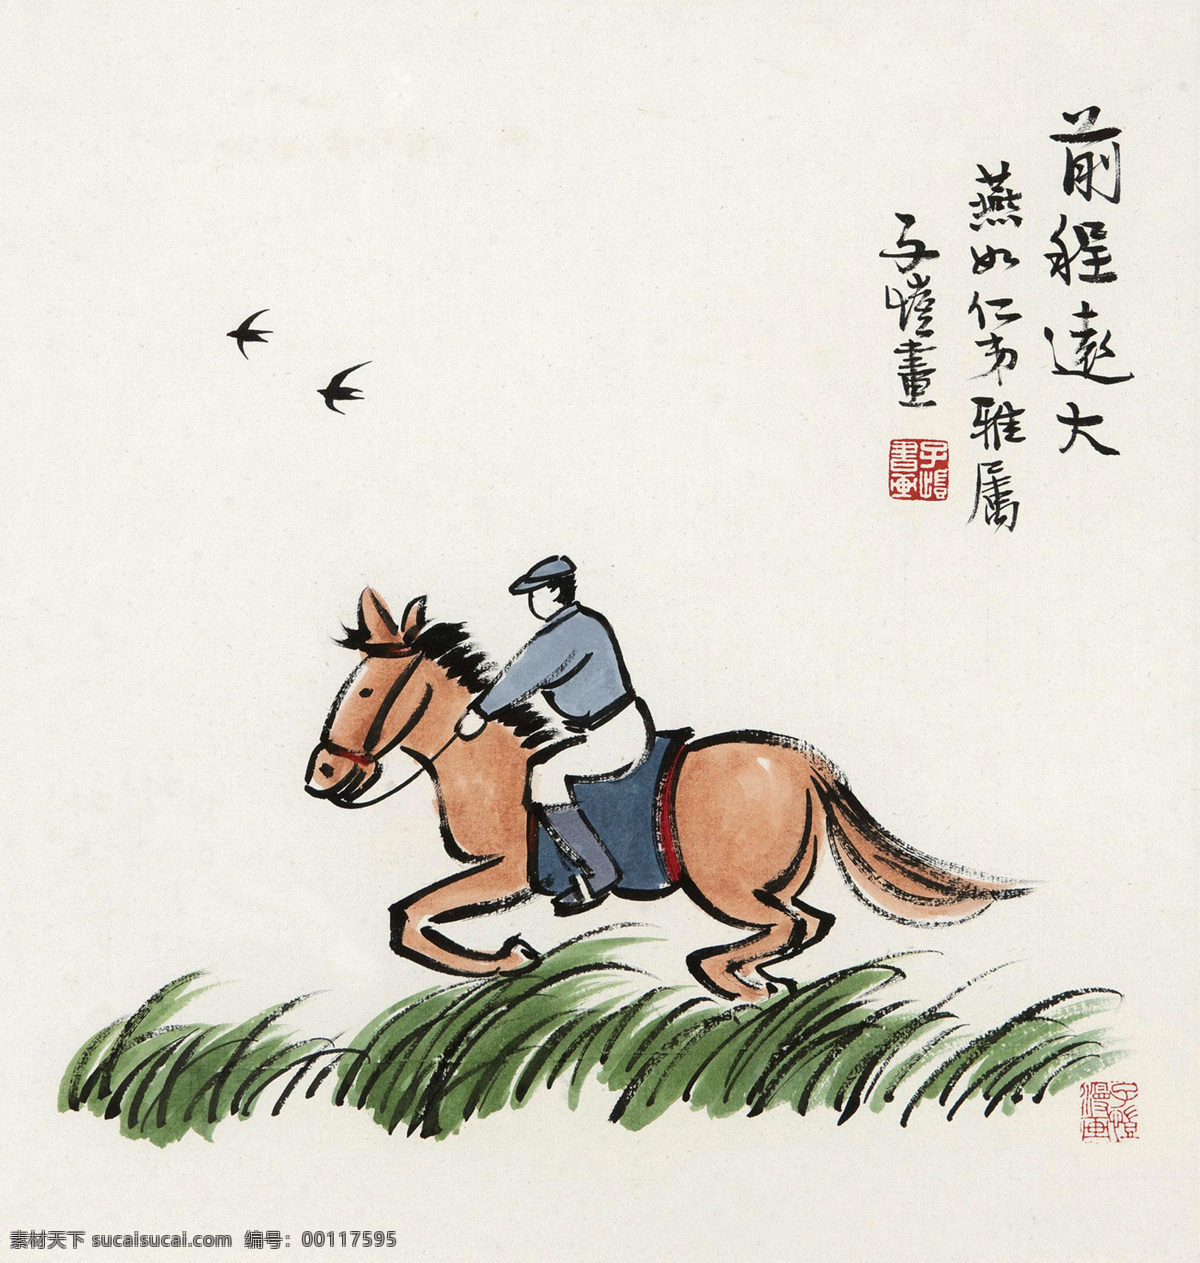 前程远大 丰子恺 国画 骑马 飞奔 水墨 漫画人物 中国画 绘画书法 文化艺术